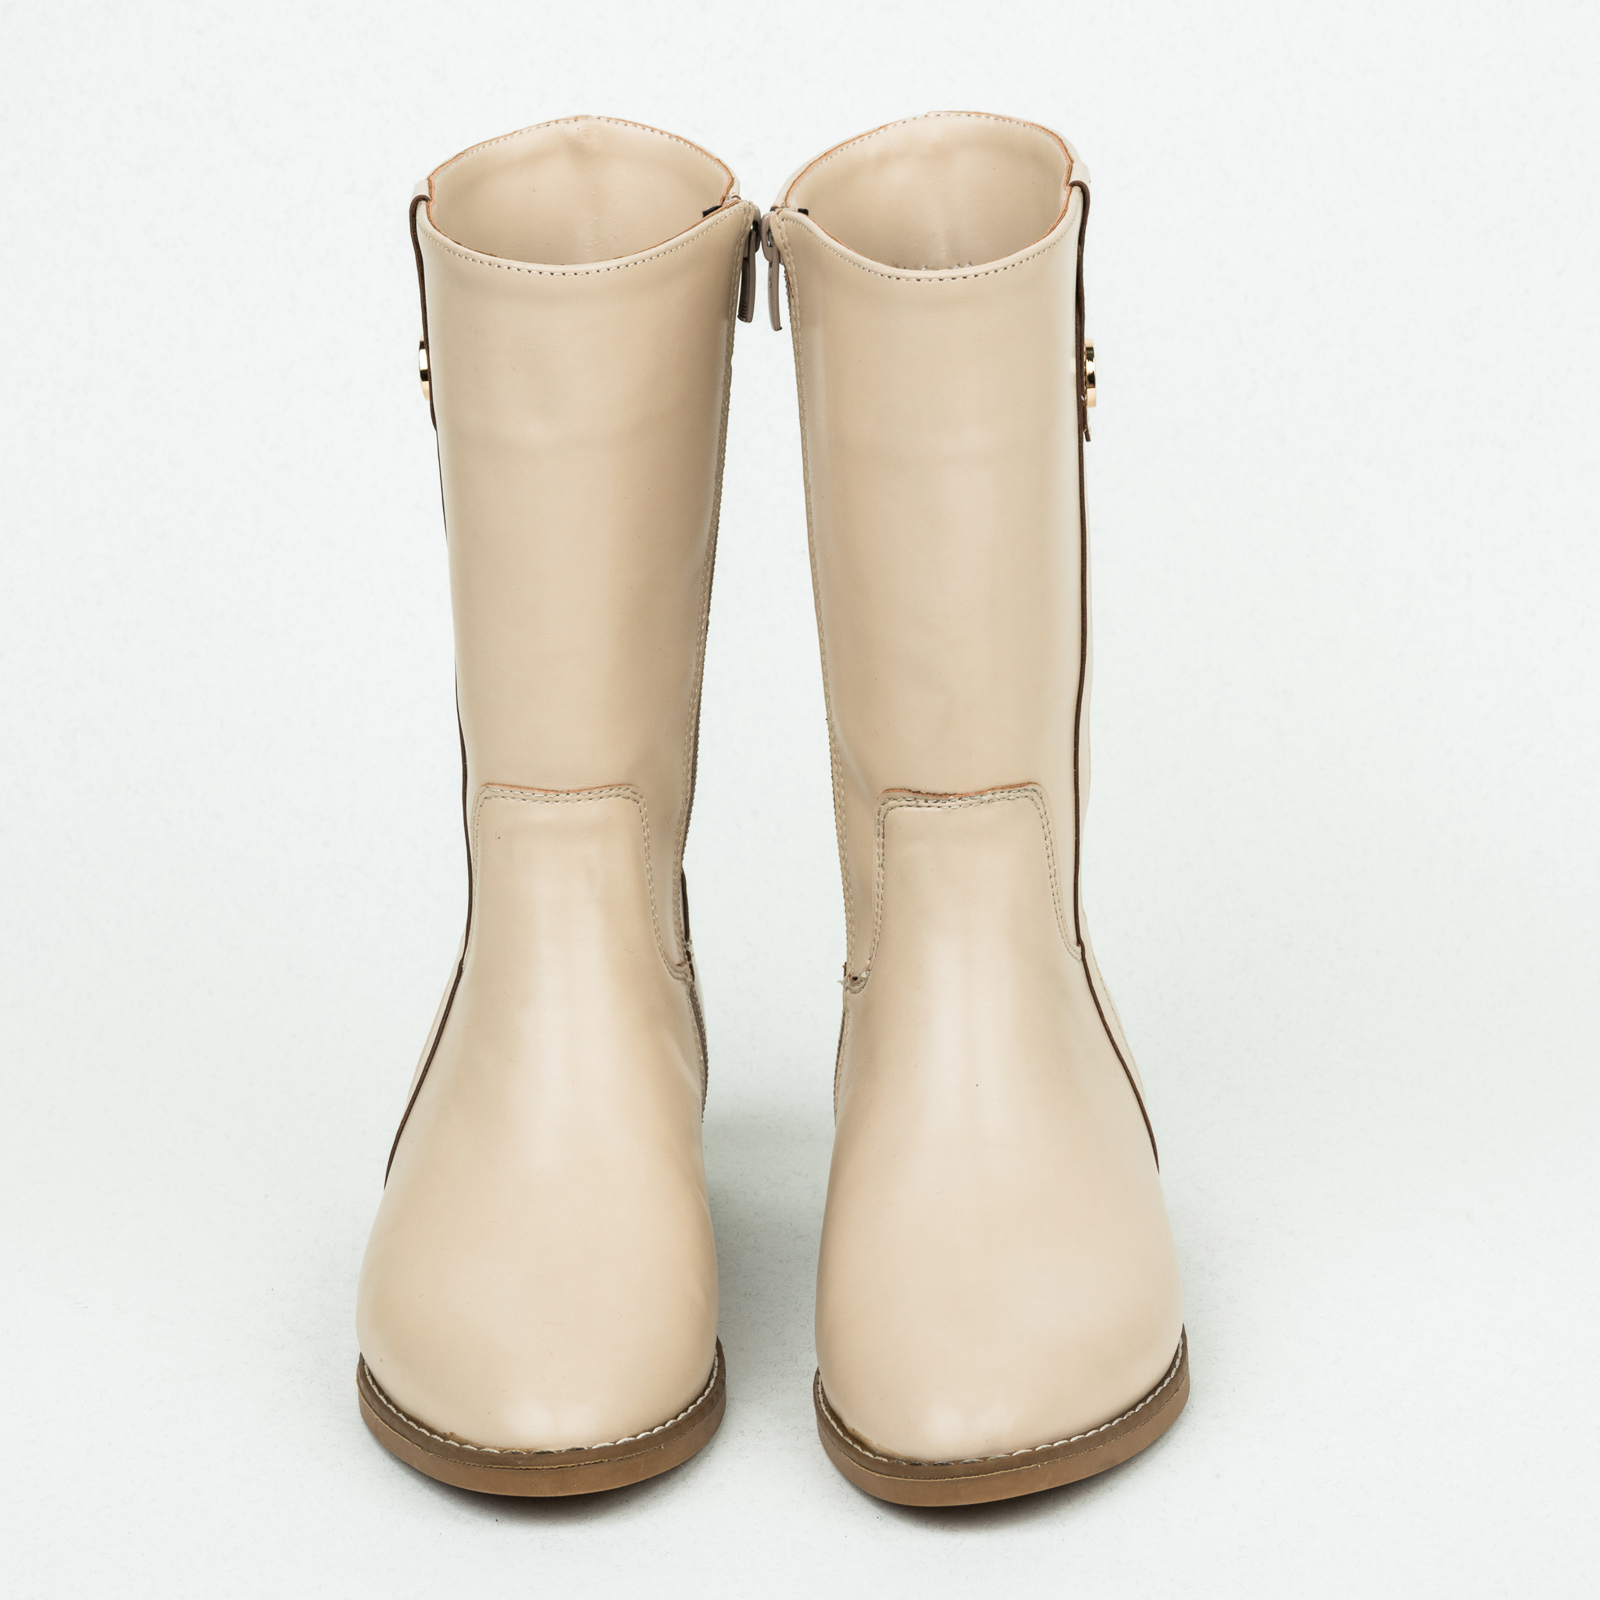 Women ankle boots B143 - LIGHT BEIGE